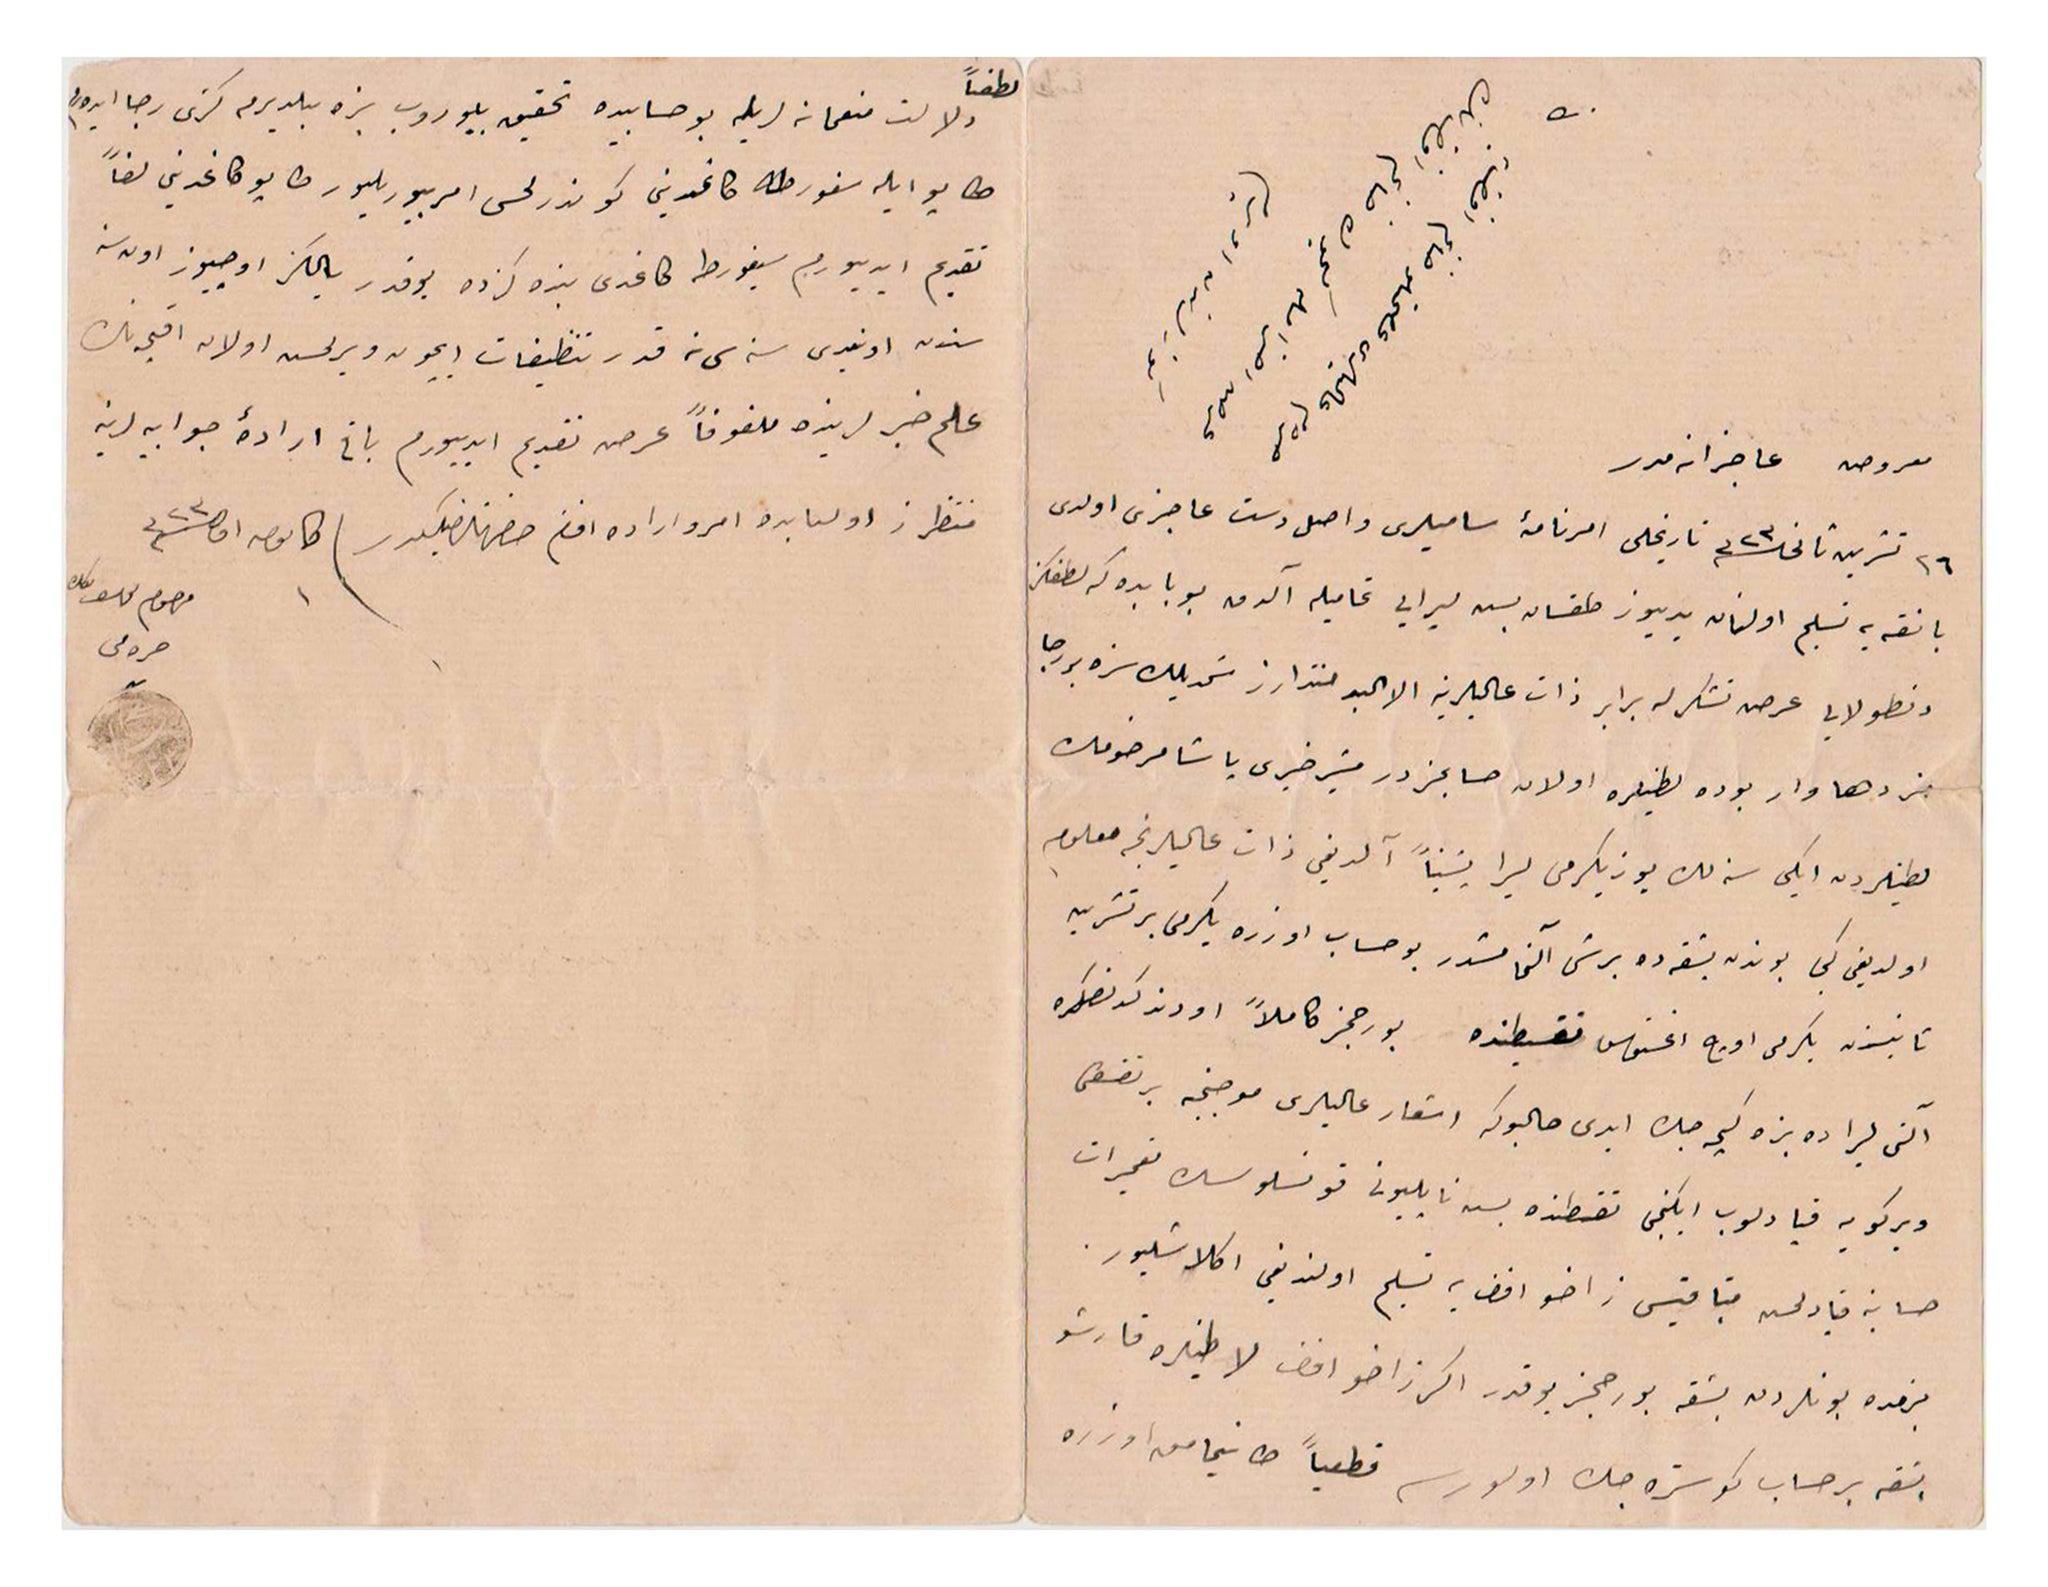 [PAŞA HAREMİ - HACİZ / HUKUK] 9 Aralık 1907 (17 Teşrinisani 1323) tarihli, Bir Osmanlı paşasının hareminden Esma isimli zevcesinin bir haciz ile ilgili yazdığı el yazısı belge